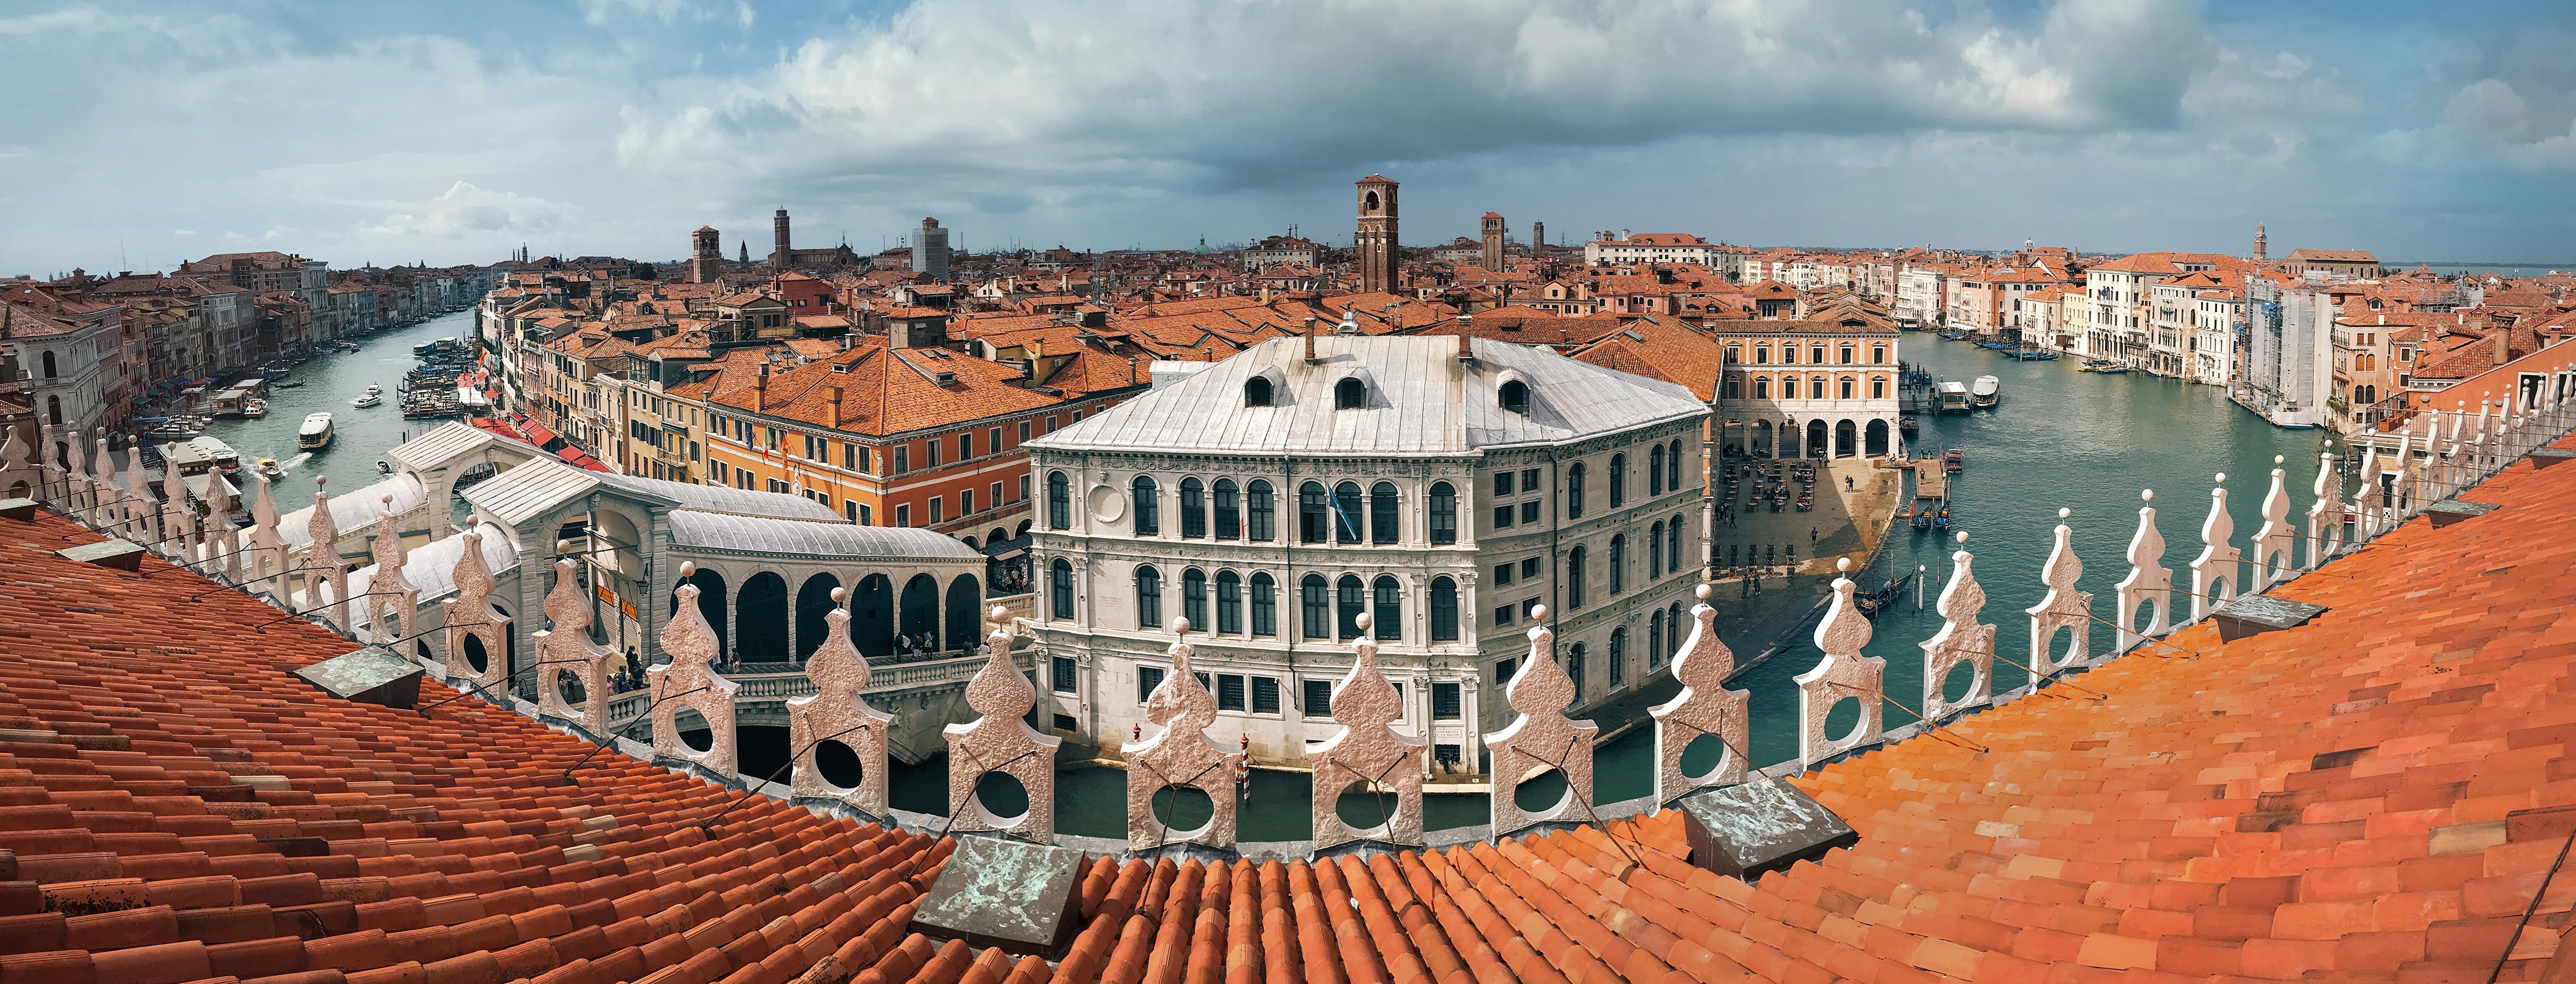 桌面上的壁纸威尼斯 全景图 城市